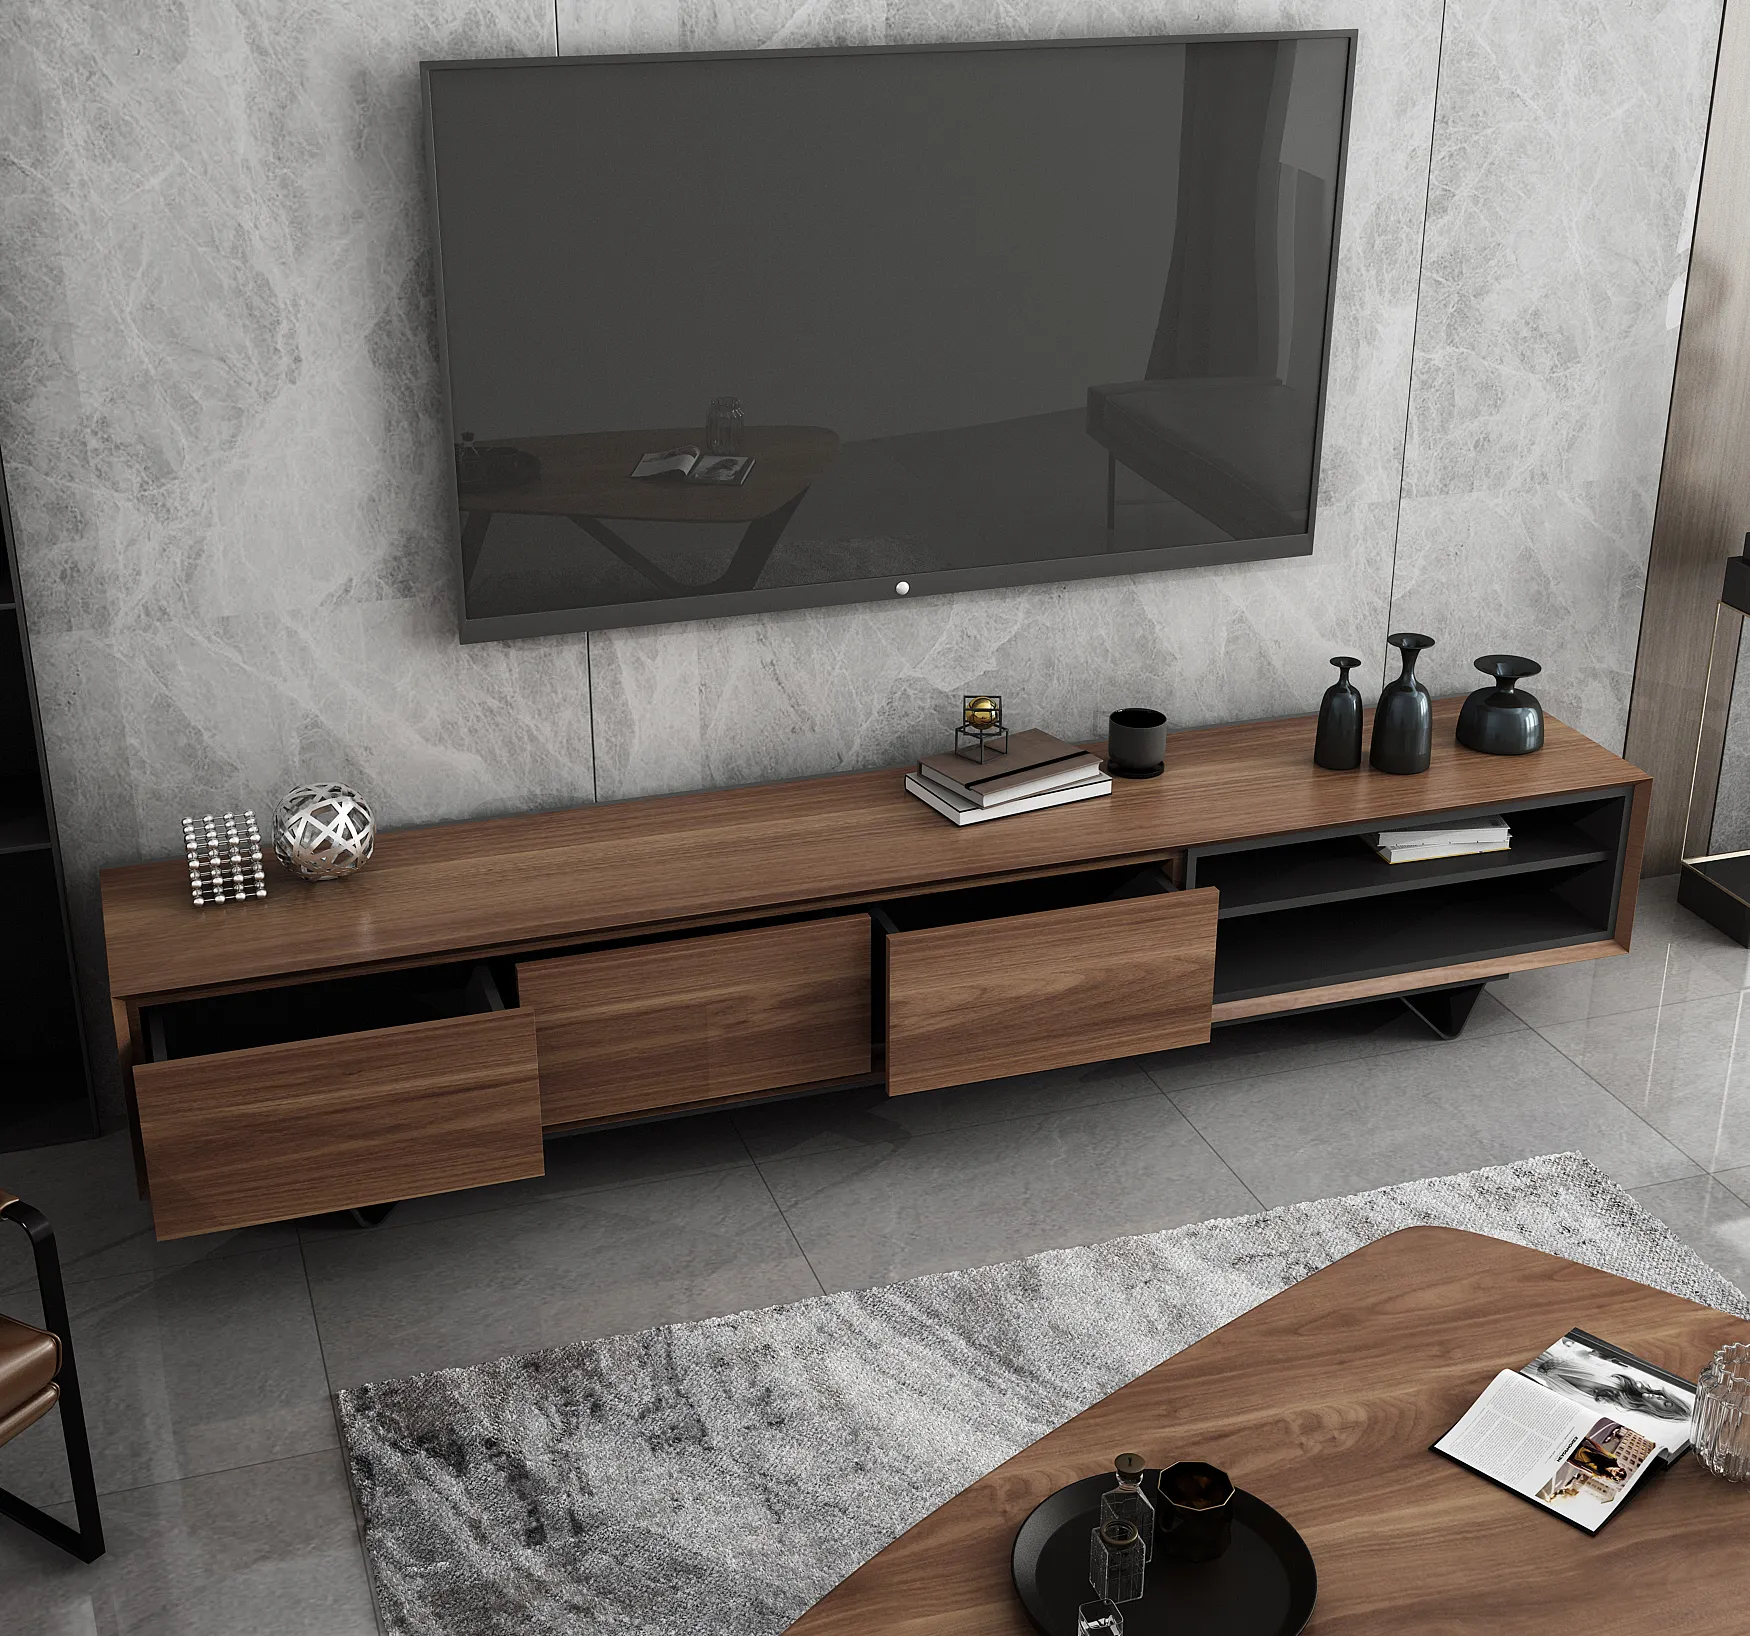 ATUNUS toptan çin mal basit ahşap modern mobilya dolapları raflı dolap tasarım TV tezgah